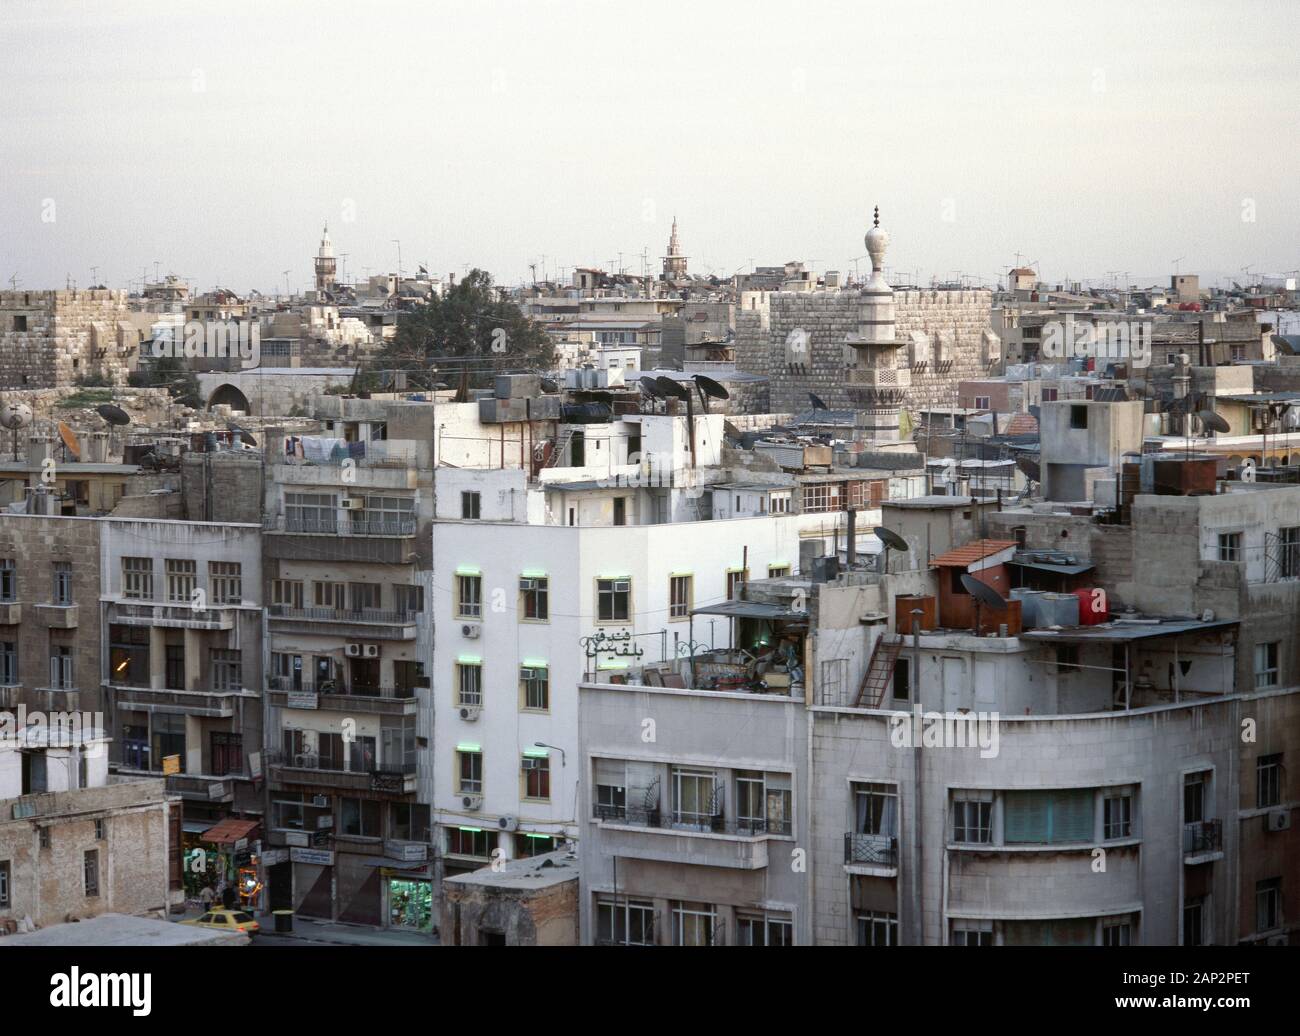 Arabische Republik Syrien. Damaskus. Aspekt der Stadt bei Sonnenuntergang. Foto vor dem syrischen Bürgerkrieg. Stockfoto